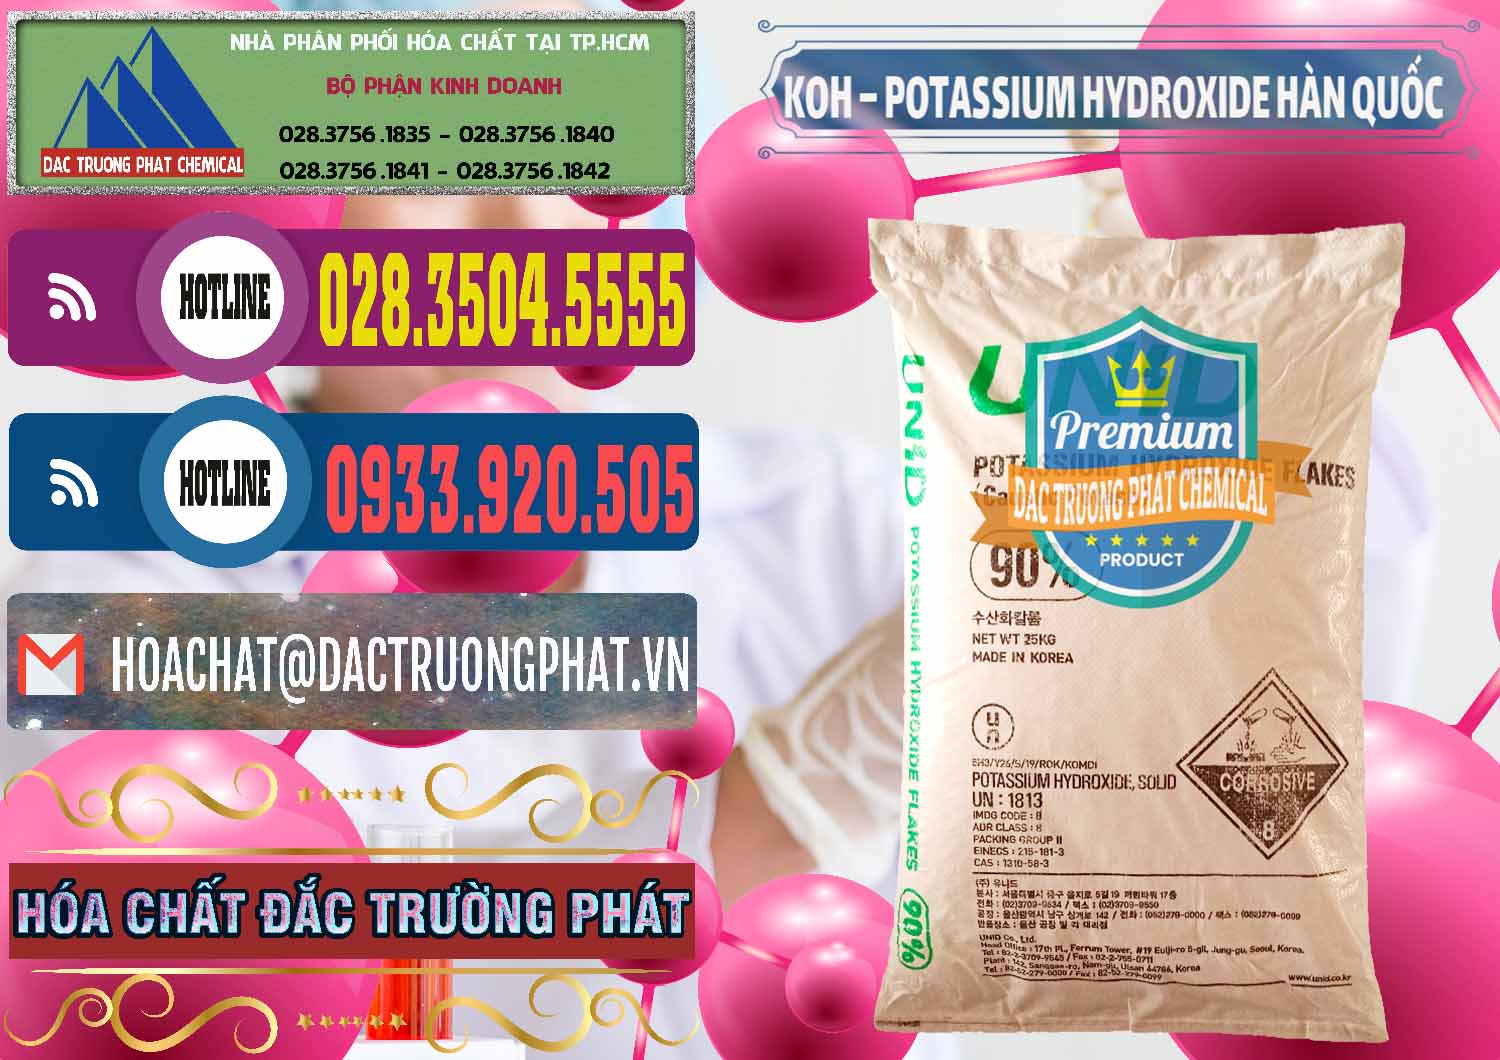 Đơn vị cung cấp & bán KOH ( 90%) – Potassium Hydroxide Unid Hàn Quốc Korea - 0090 - Nơi chuyên cung ứng ( phân phối ) hóa chất tại TP.HCM - muabanhoachat.com.vn